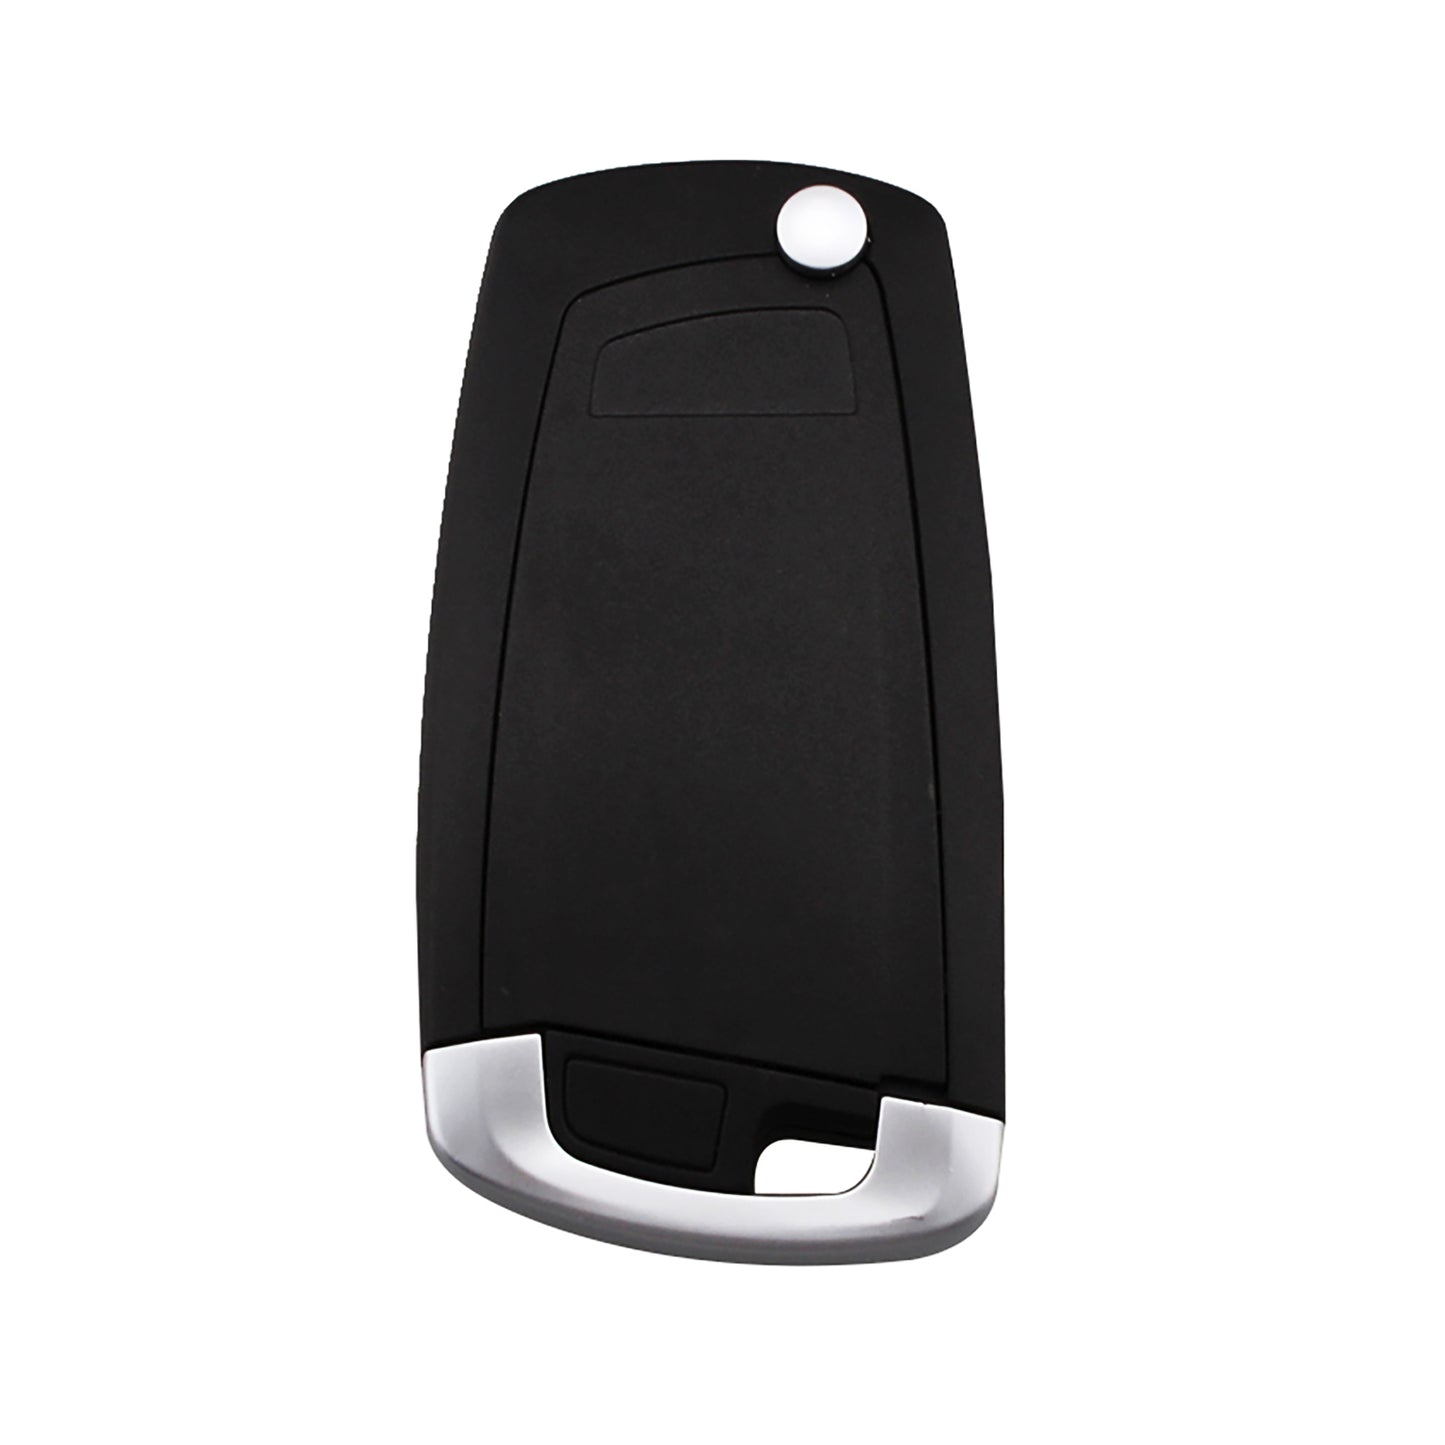 3 Buttons 315MHz Keyless Entry Fob Remote Car Key For BMW Z4 X3 X5 E46 SERIES 3 5 6 7 Z3 Case Car Alarm FCC ID: EWSSystem SKU : J200